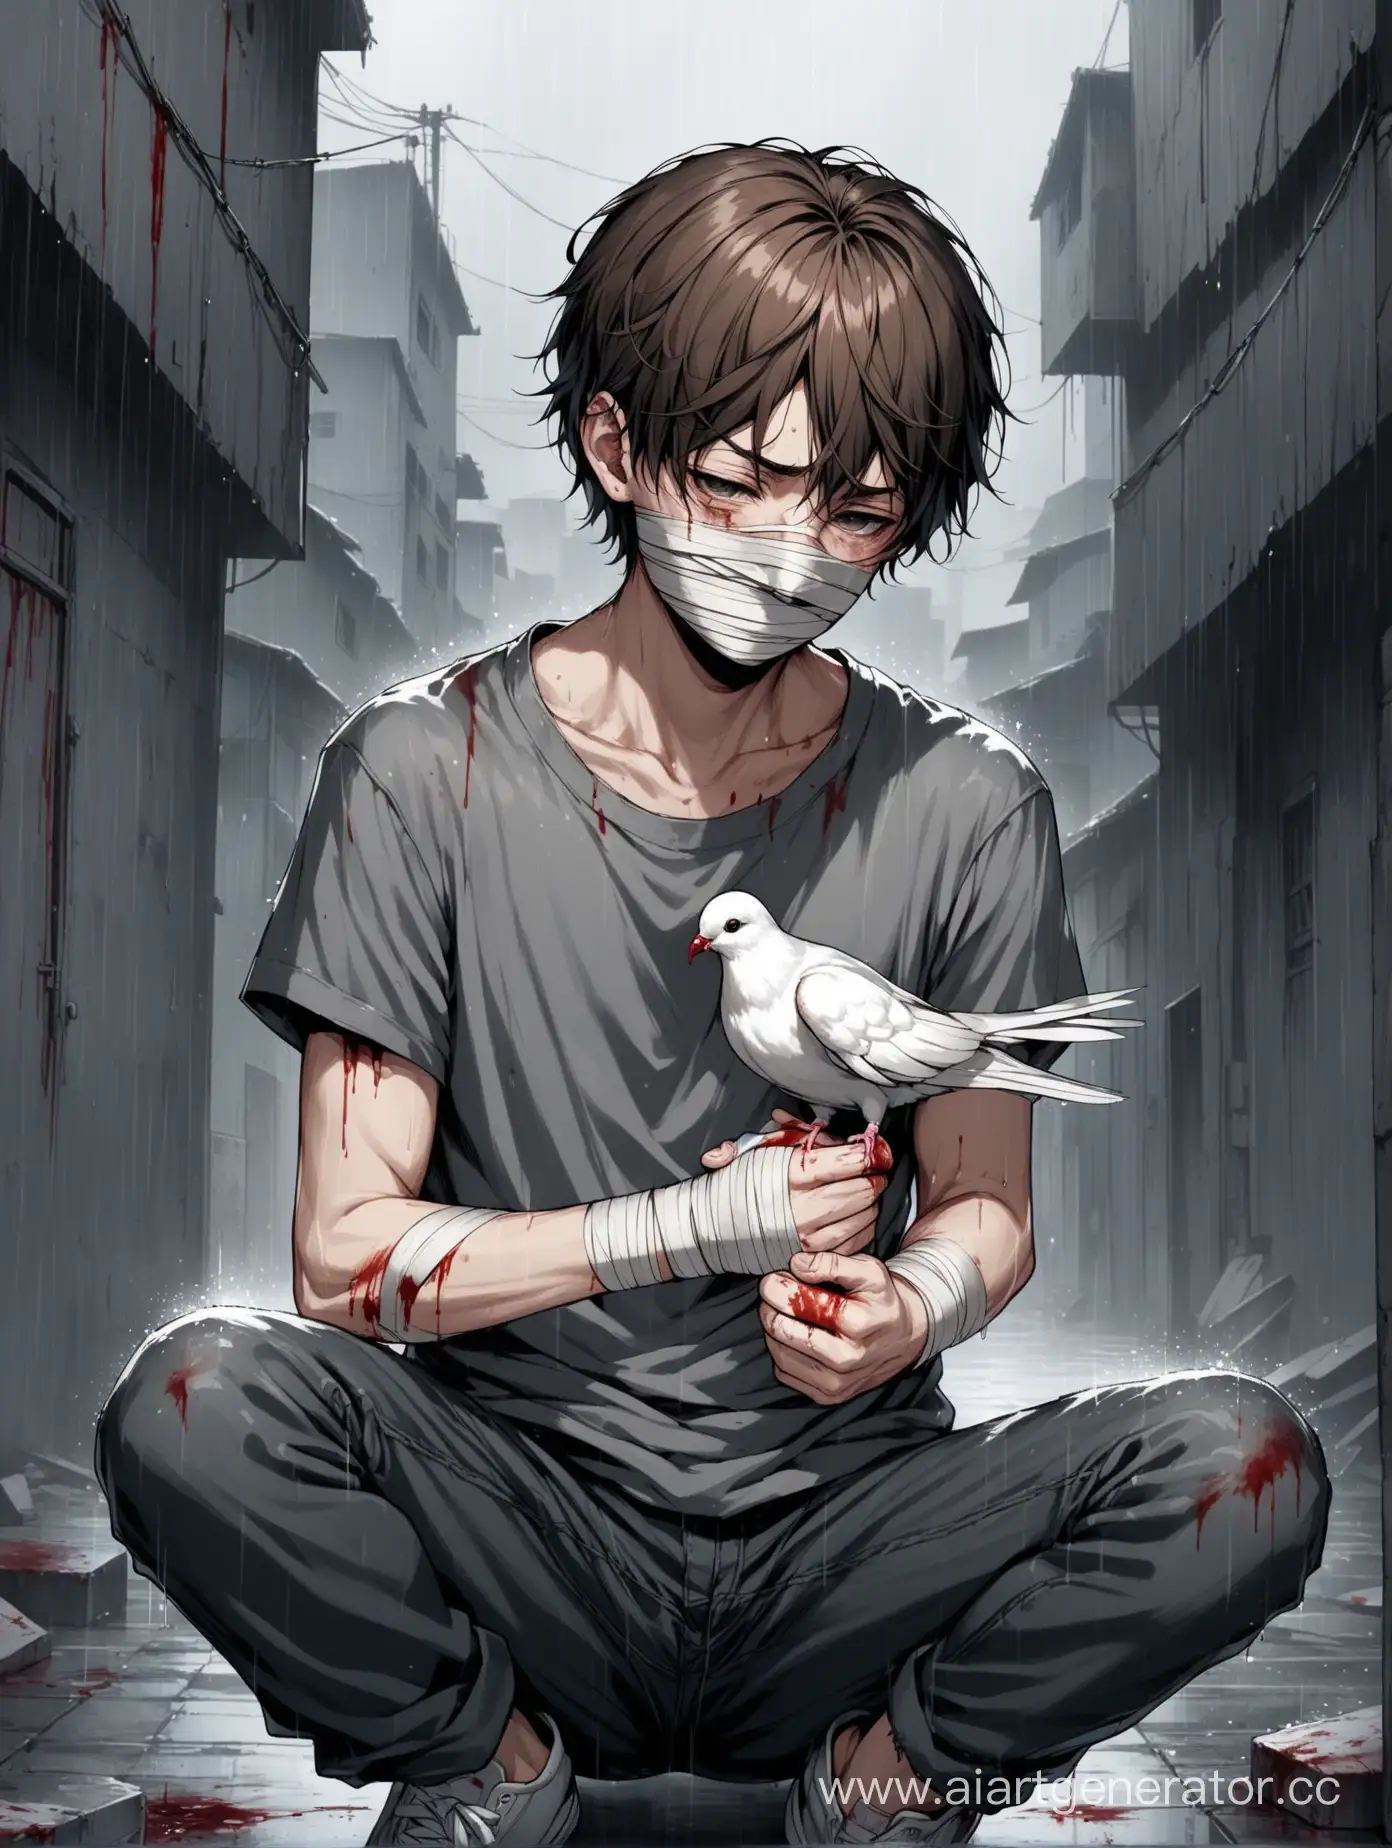 Boy-Holding-Injured-Pigeon-in-Rainy-Urban-Slum